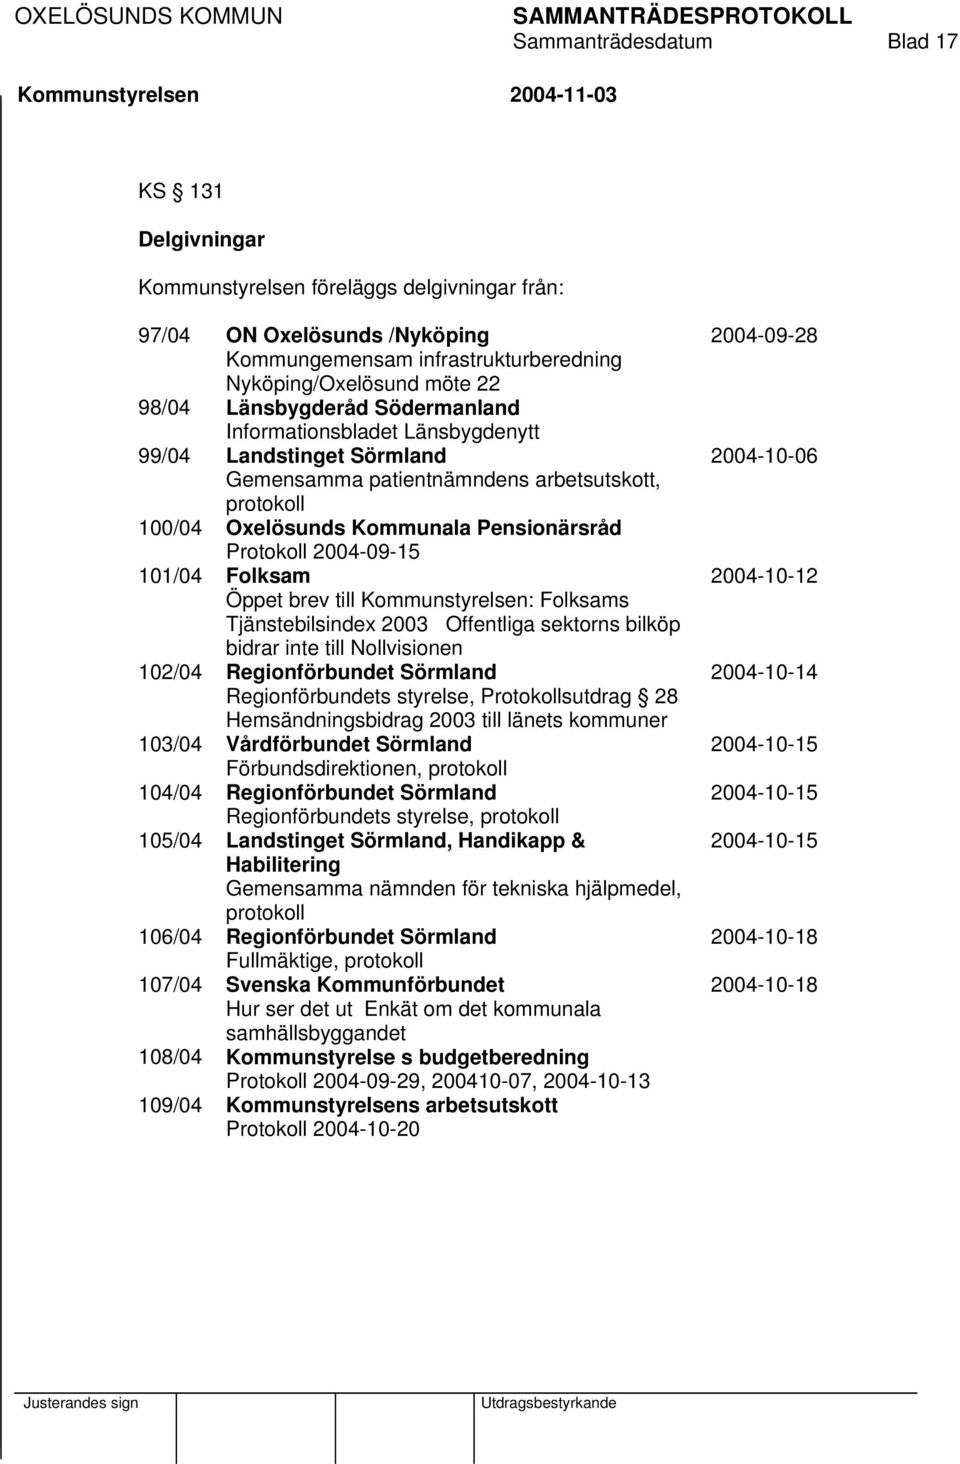 Folksam Öppet brev till : Folksams Tjänstebilsindex 2003 Offentliga sektorns bilköp bidrar inte till Nollvisionen 102/04 Regionförbundet Sörmland Regionförbundets styrelse, Protokollsutdrag 28